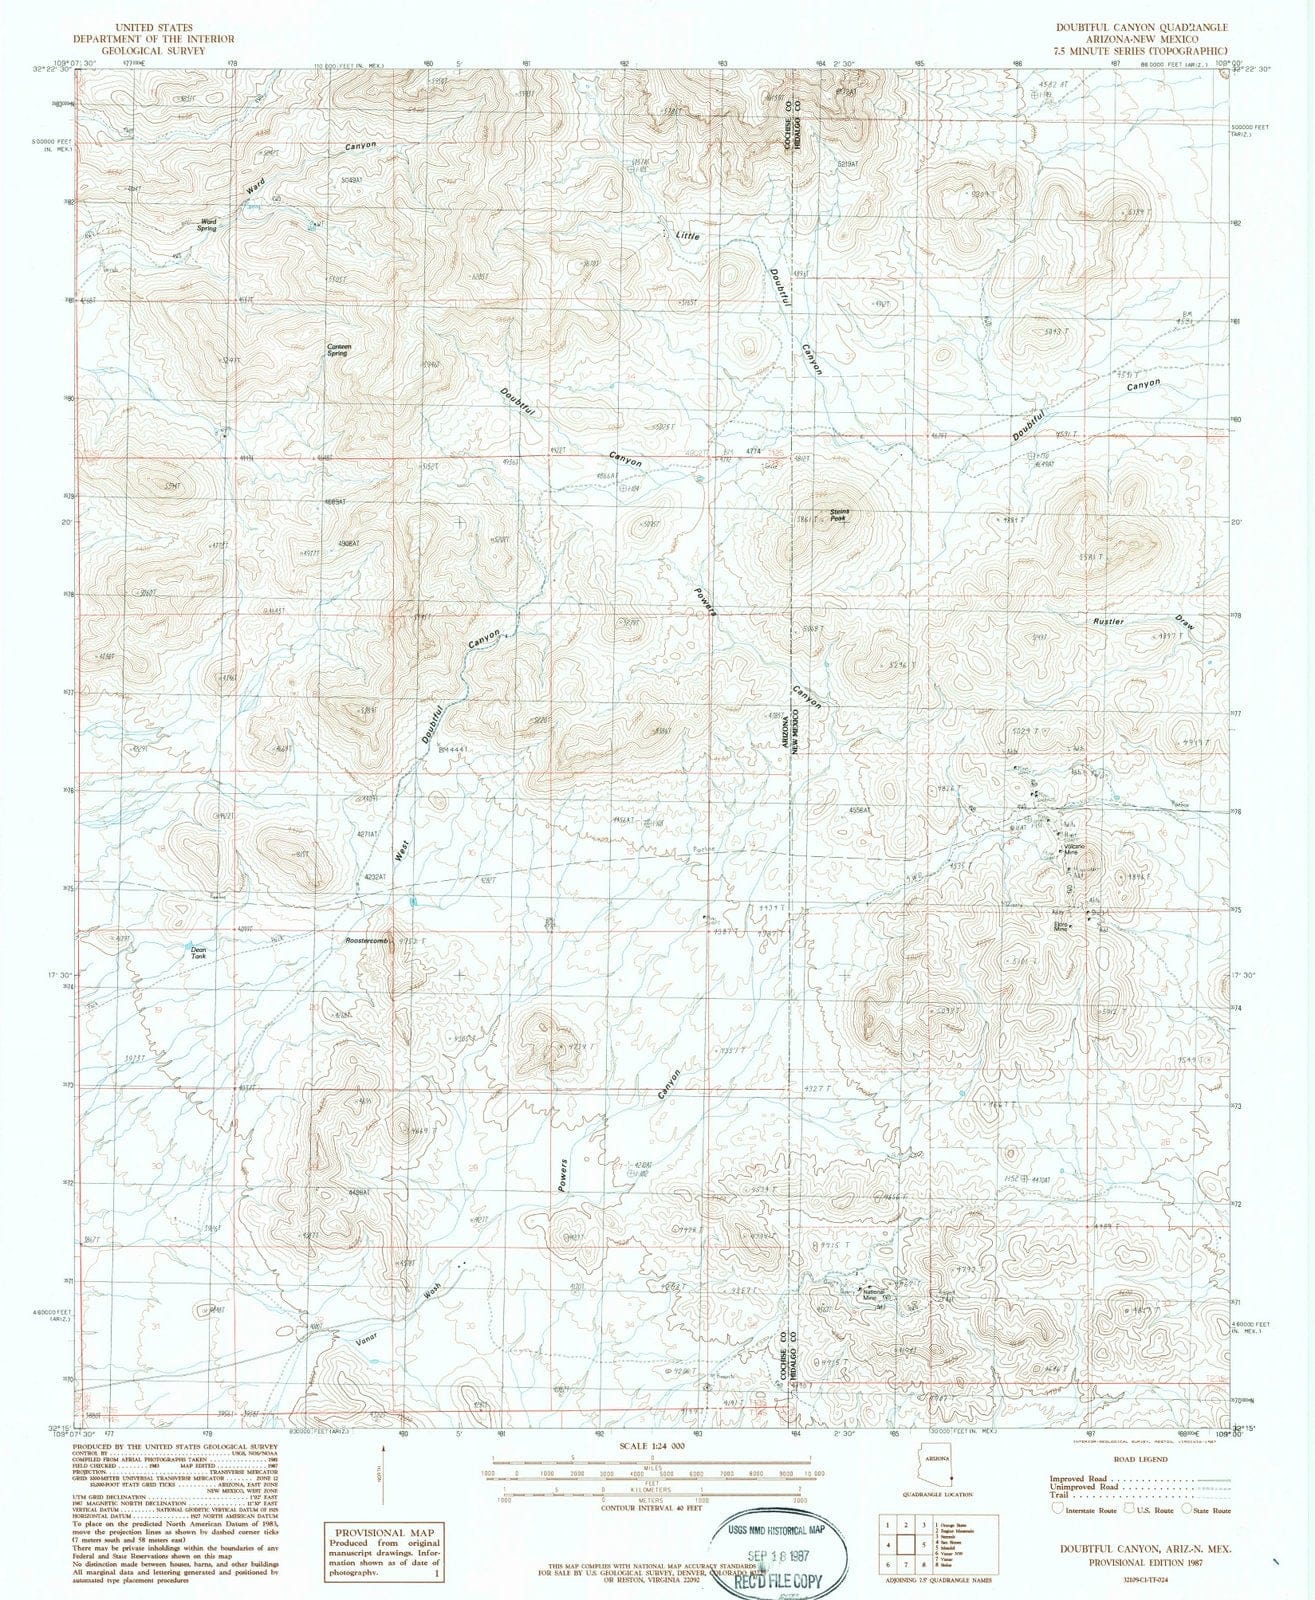 1987 Doubtful Canyon, AZ - Arizona - USGS Topographic Map